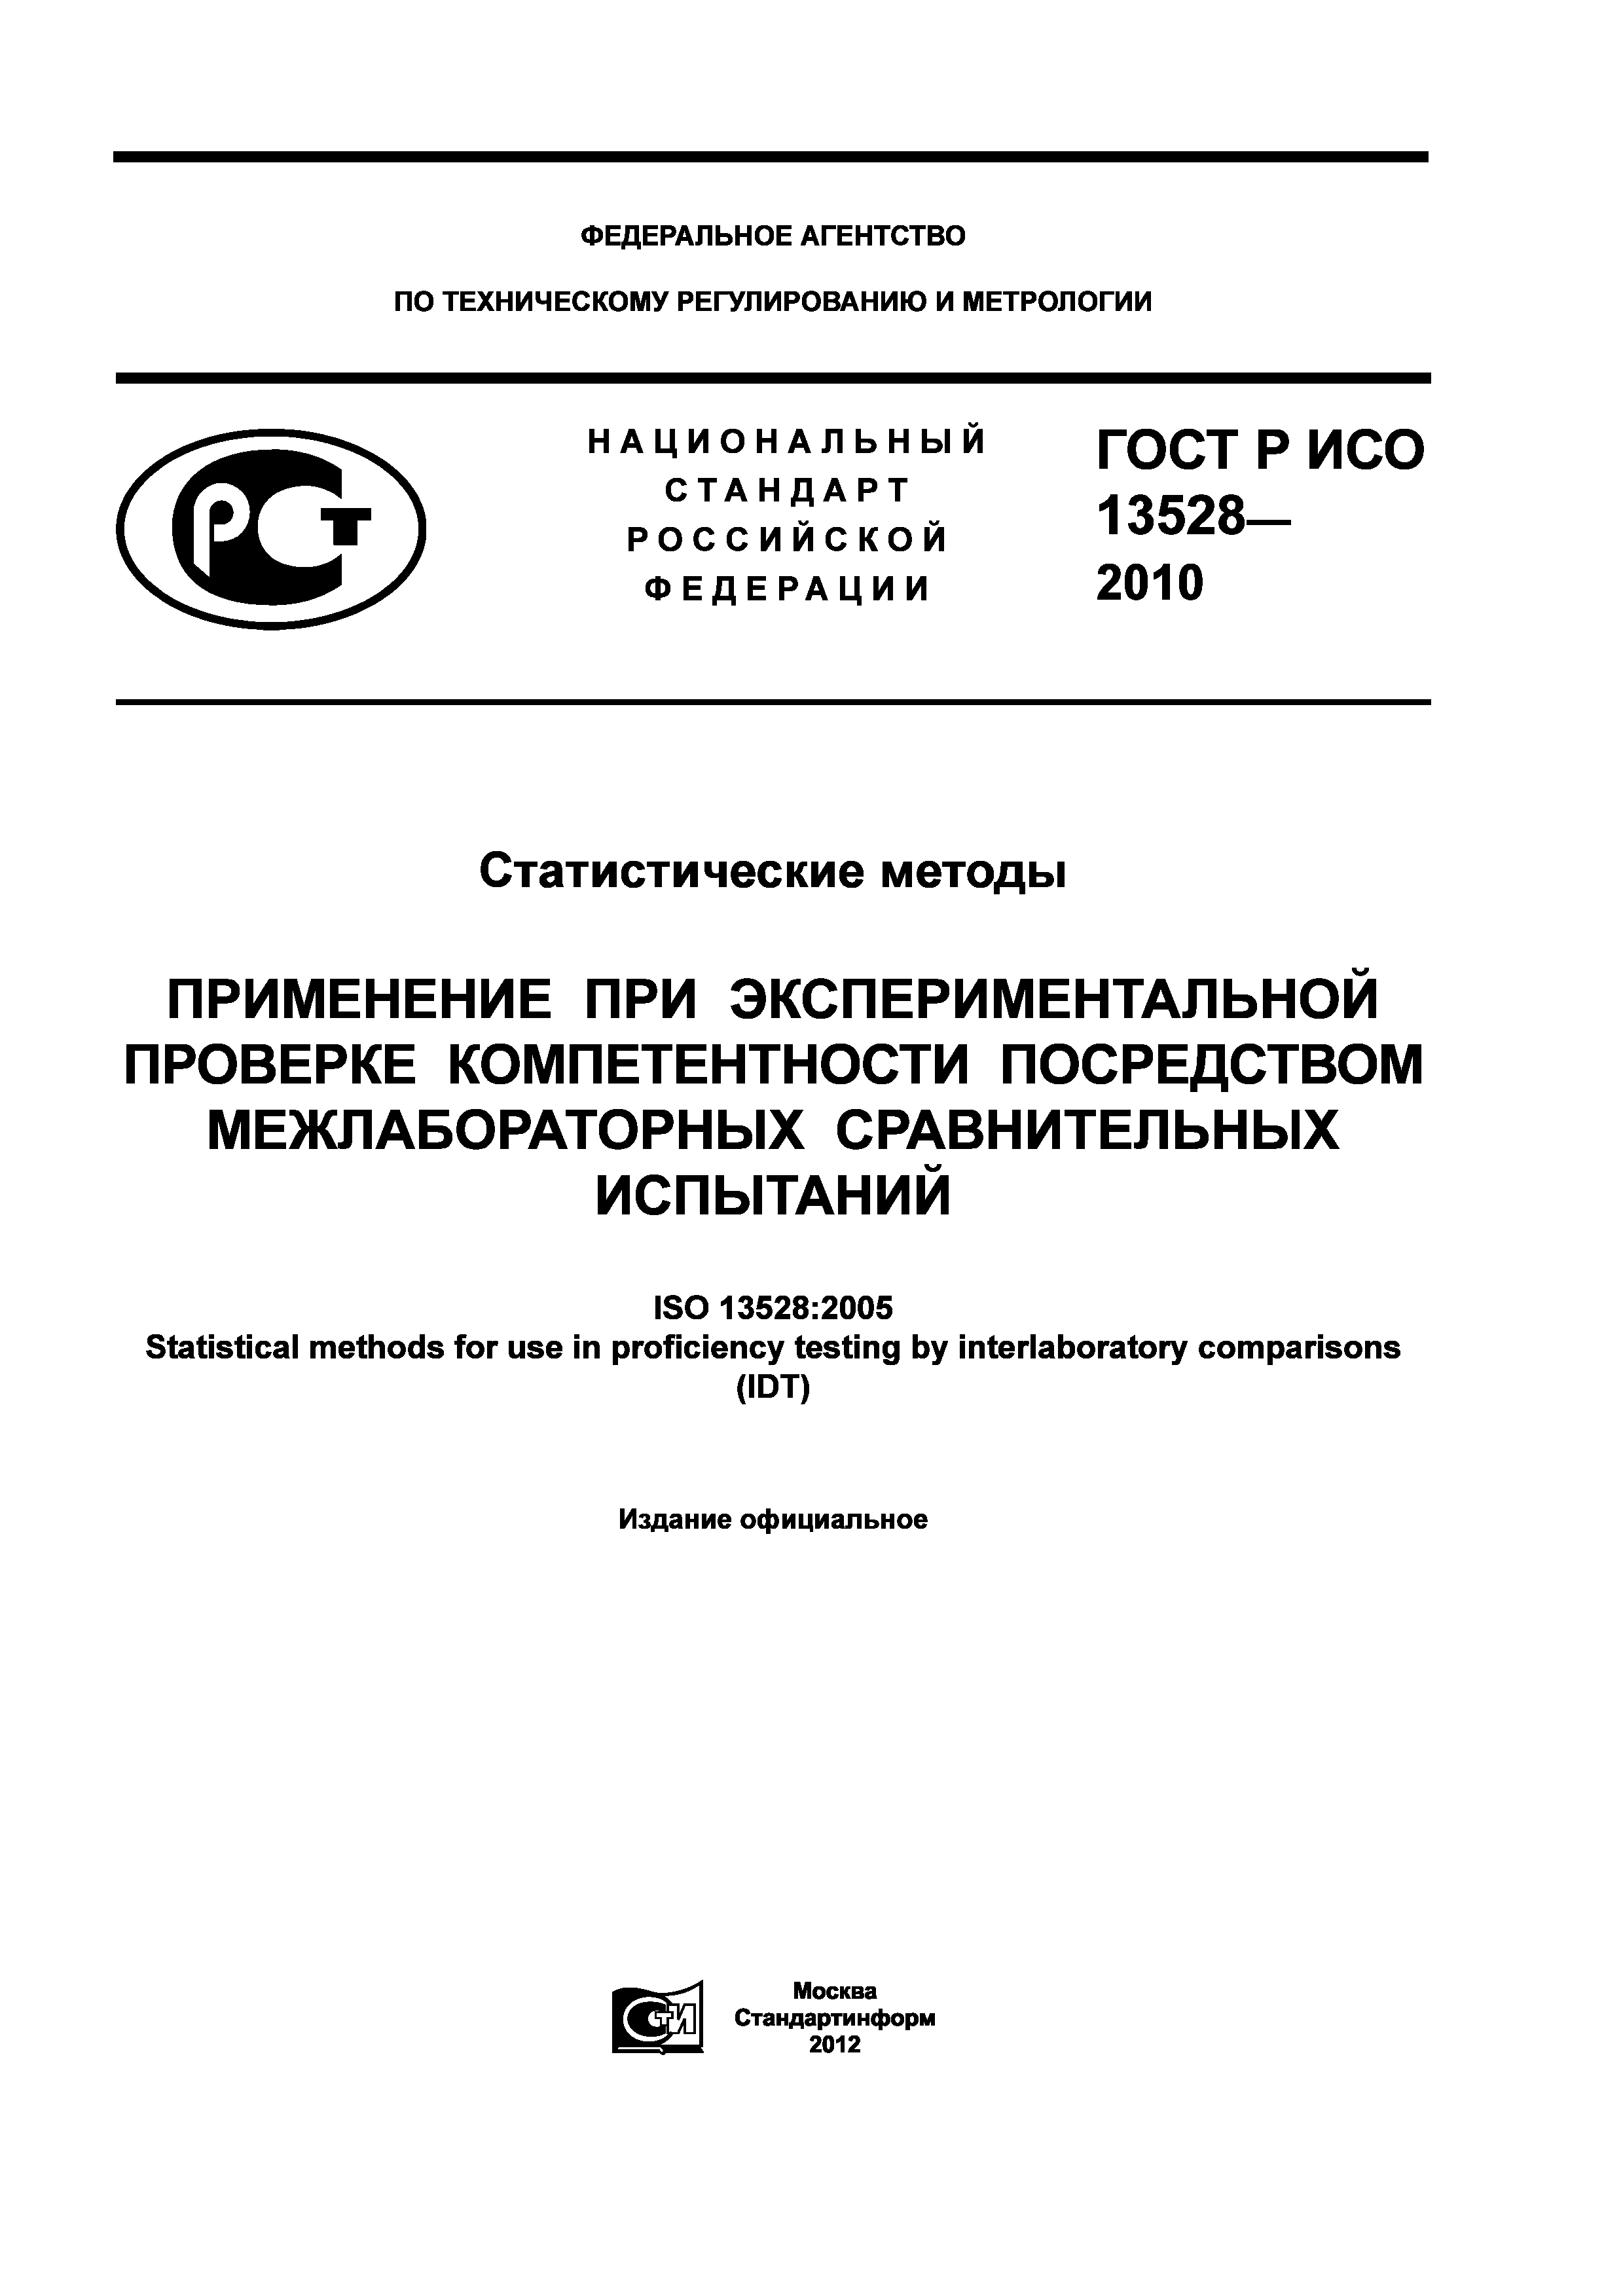 ГОСТ Р ИСО 13528-2010